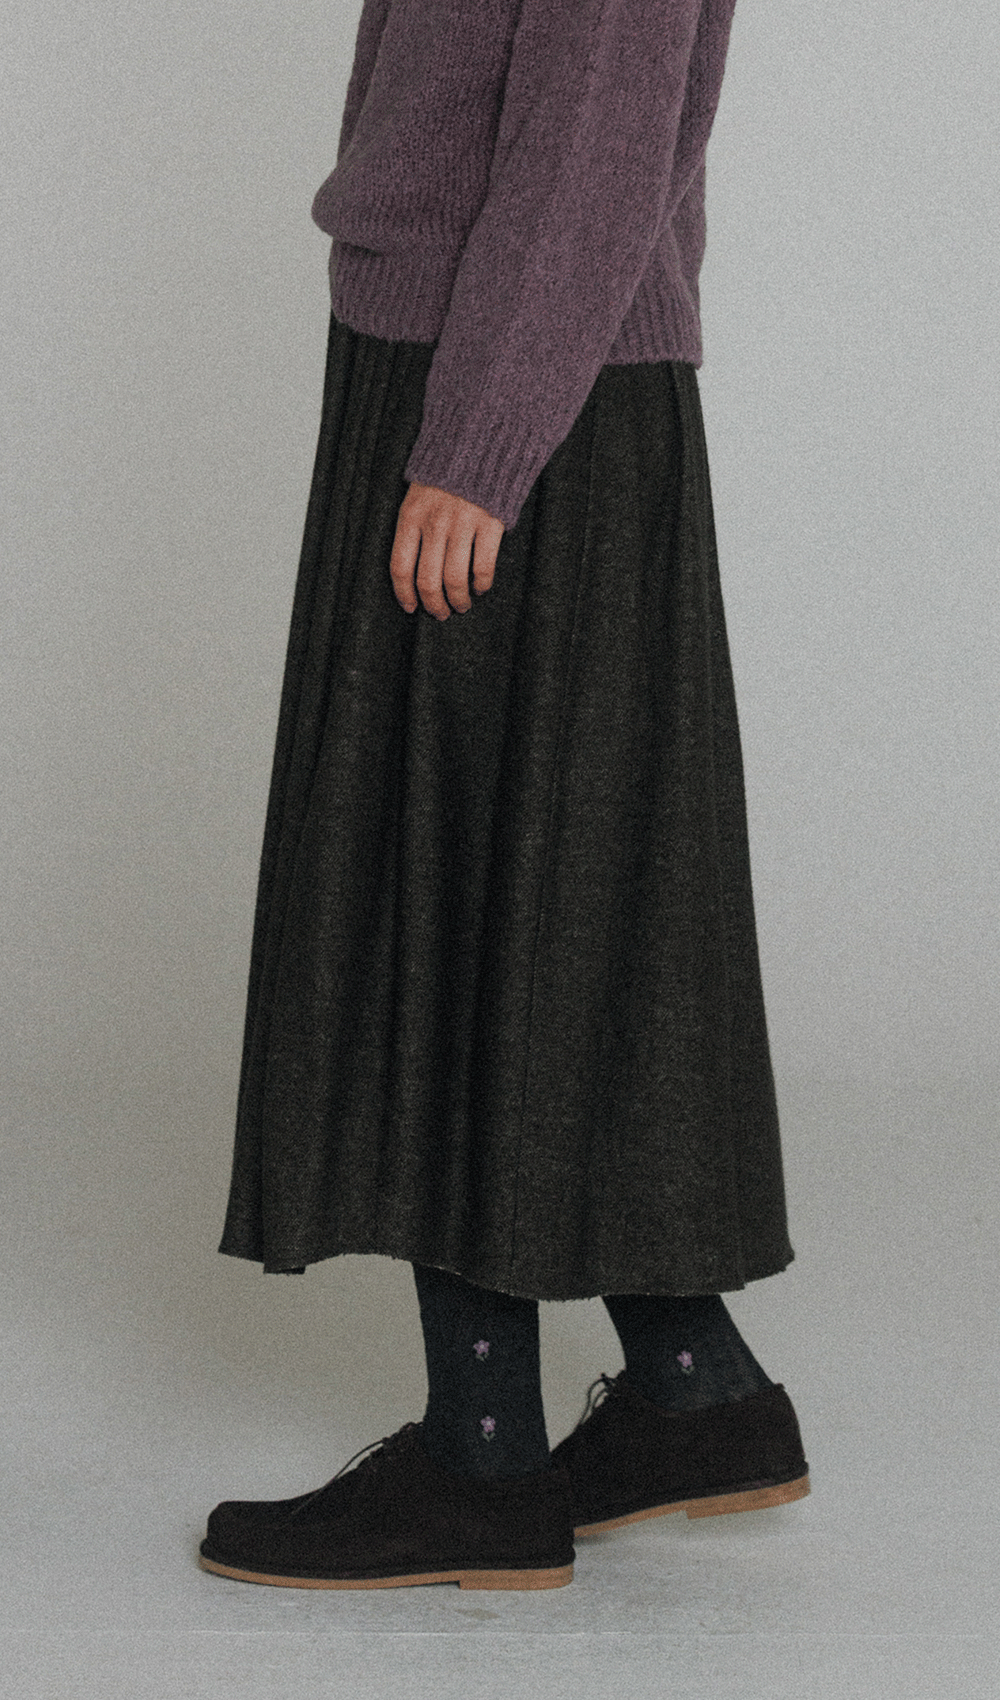 oat wool skirt